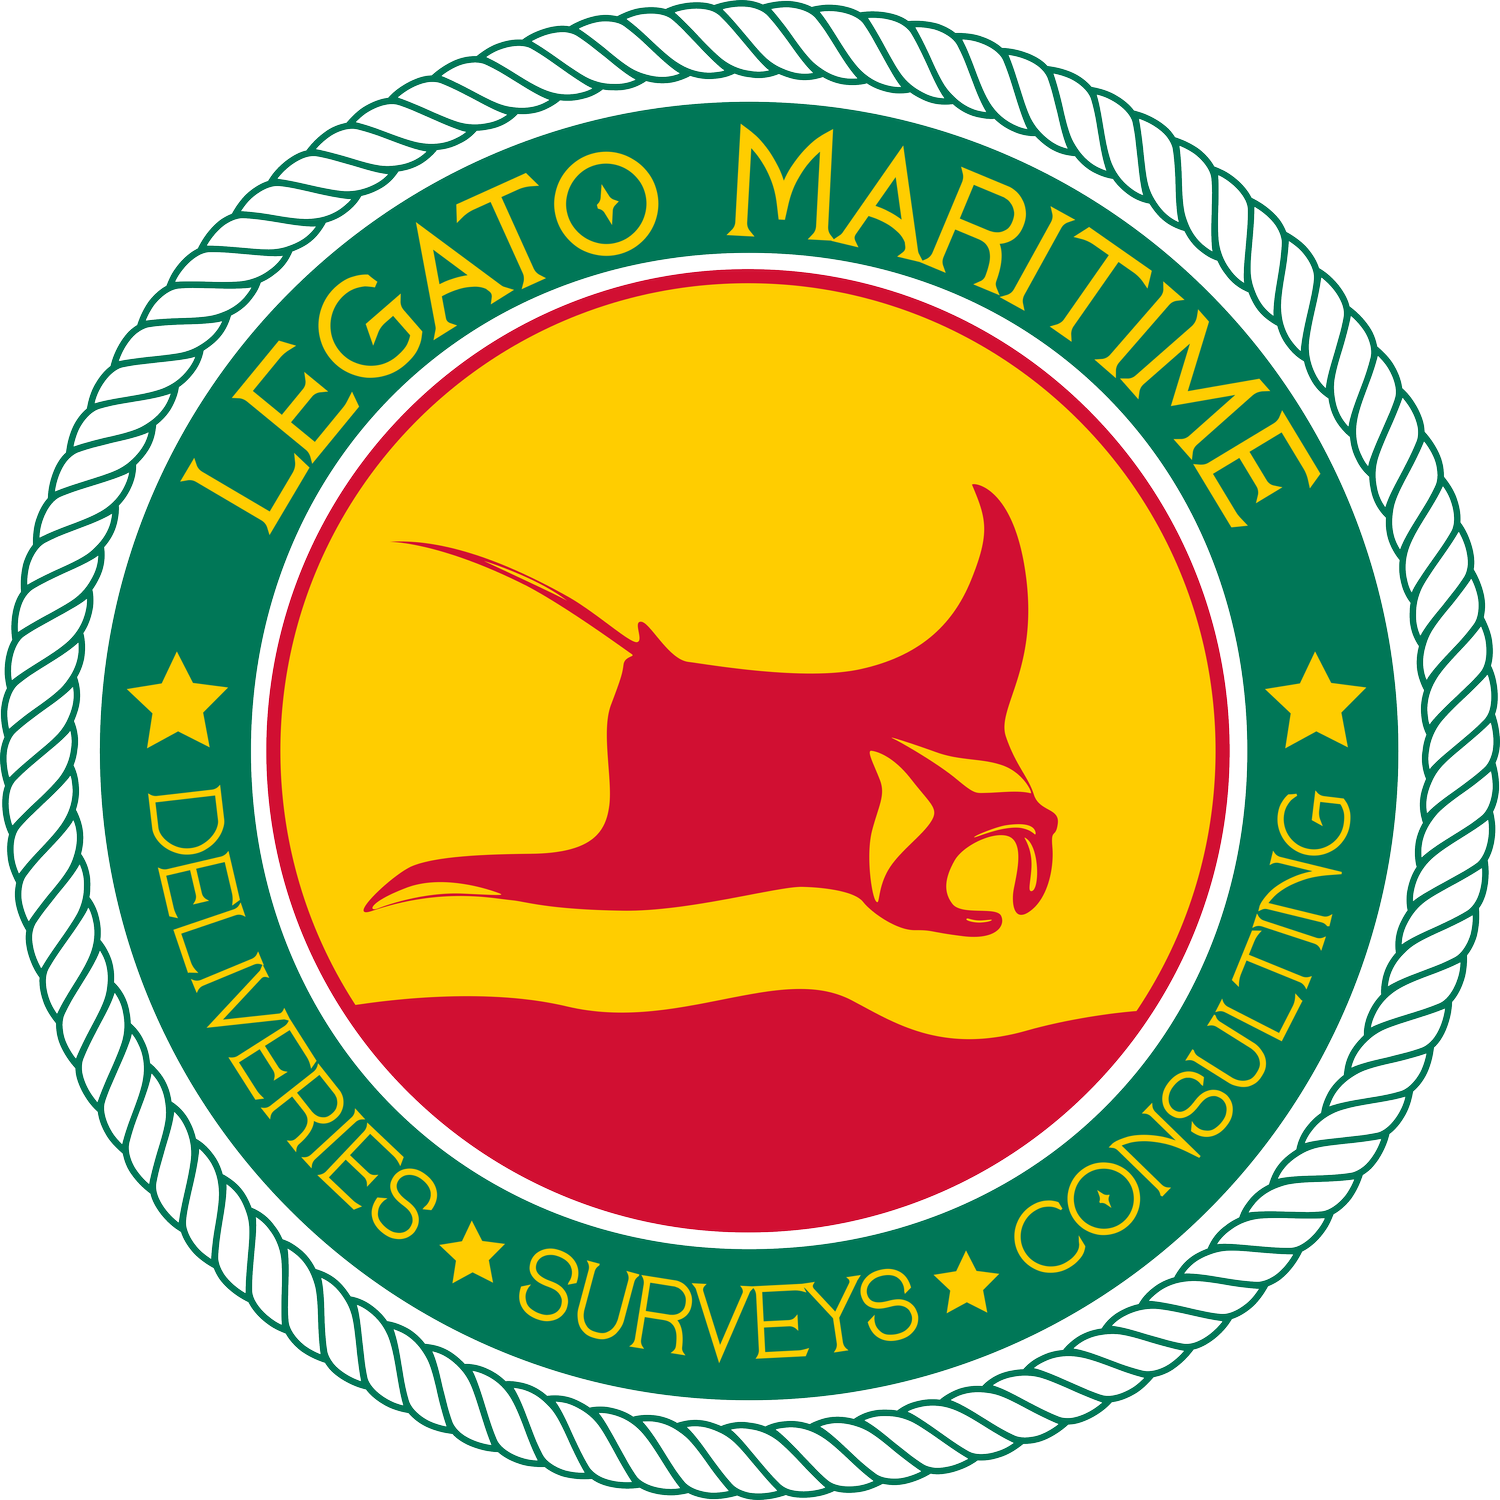 Legato Maritime